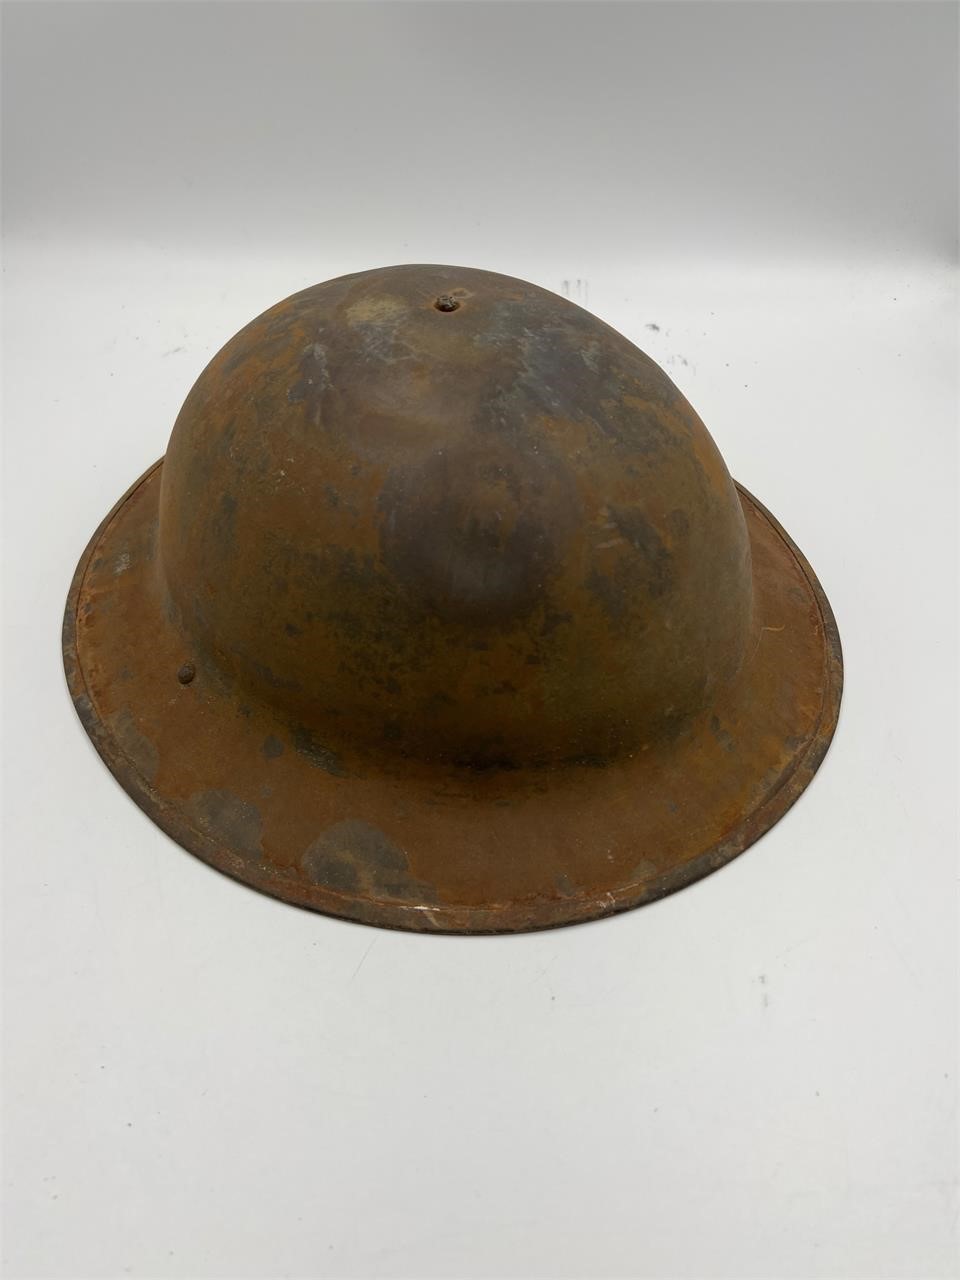 World War I doughboy helmet